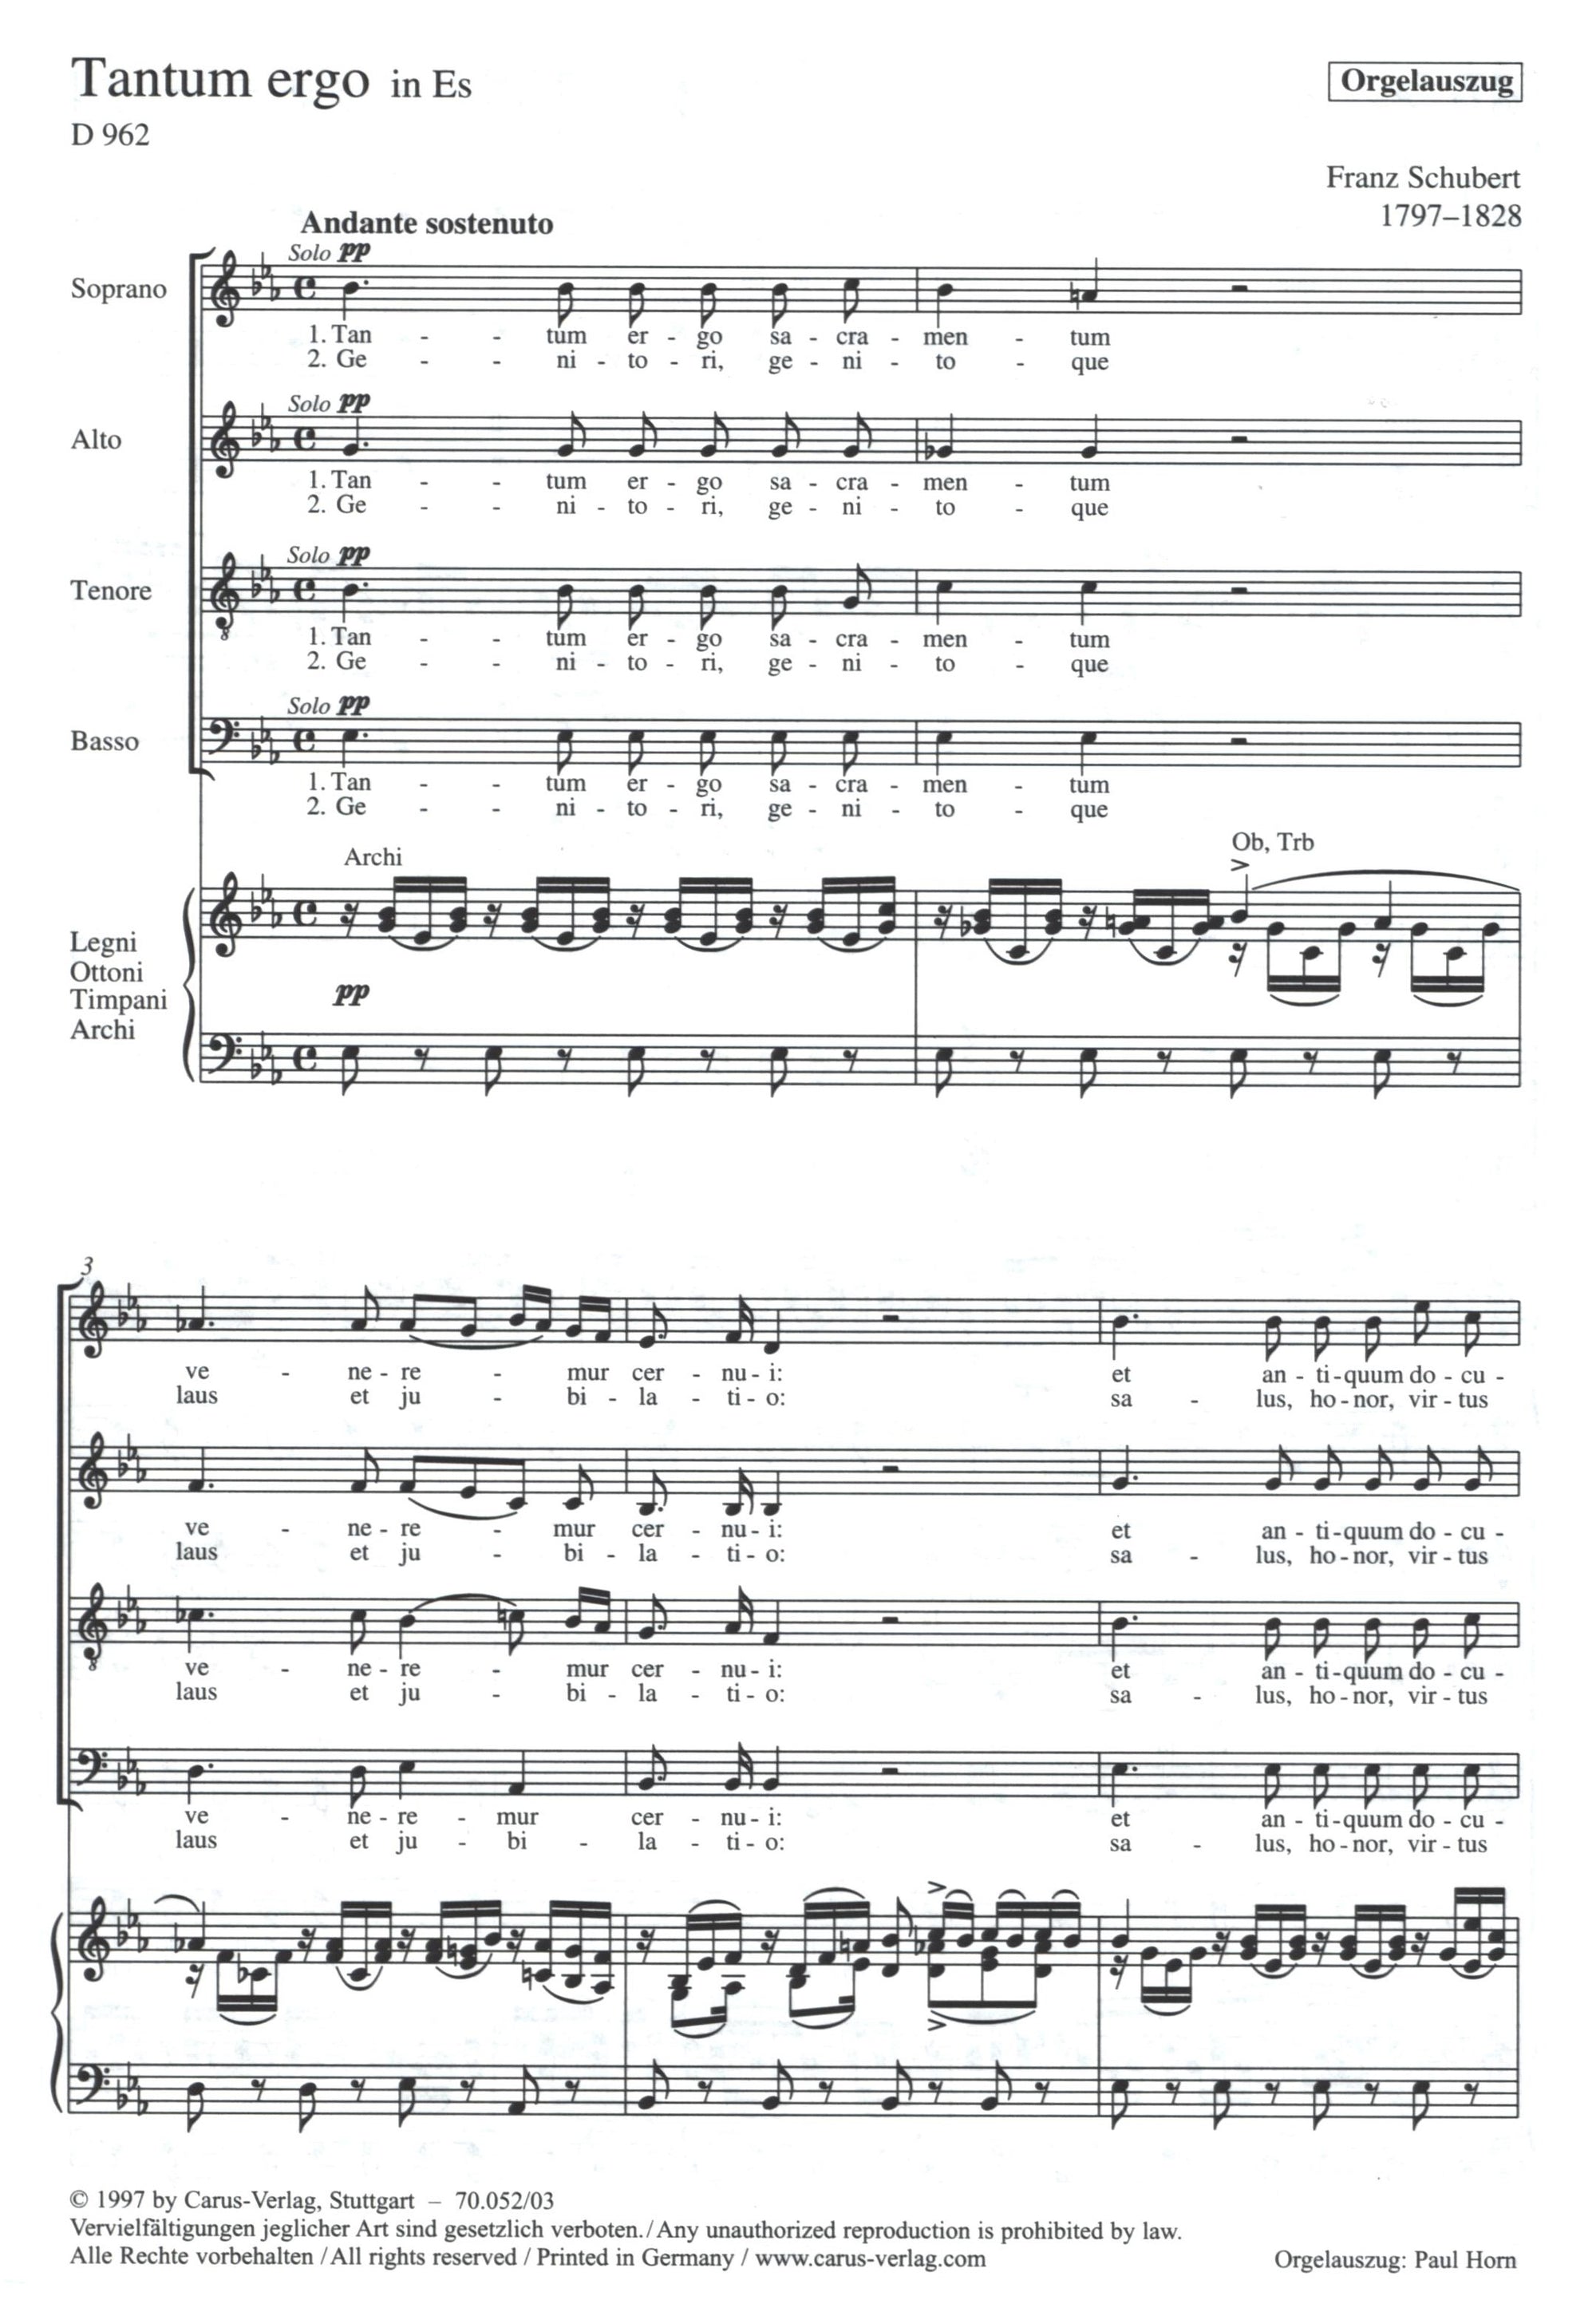 Schubert: Tantum ergo in E-flat Major, D. 962